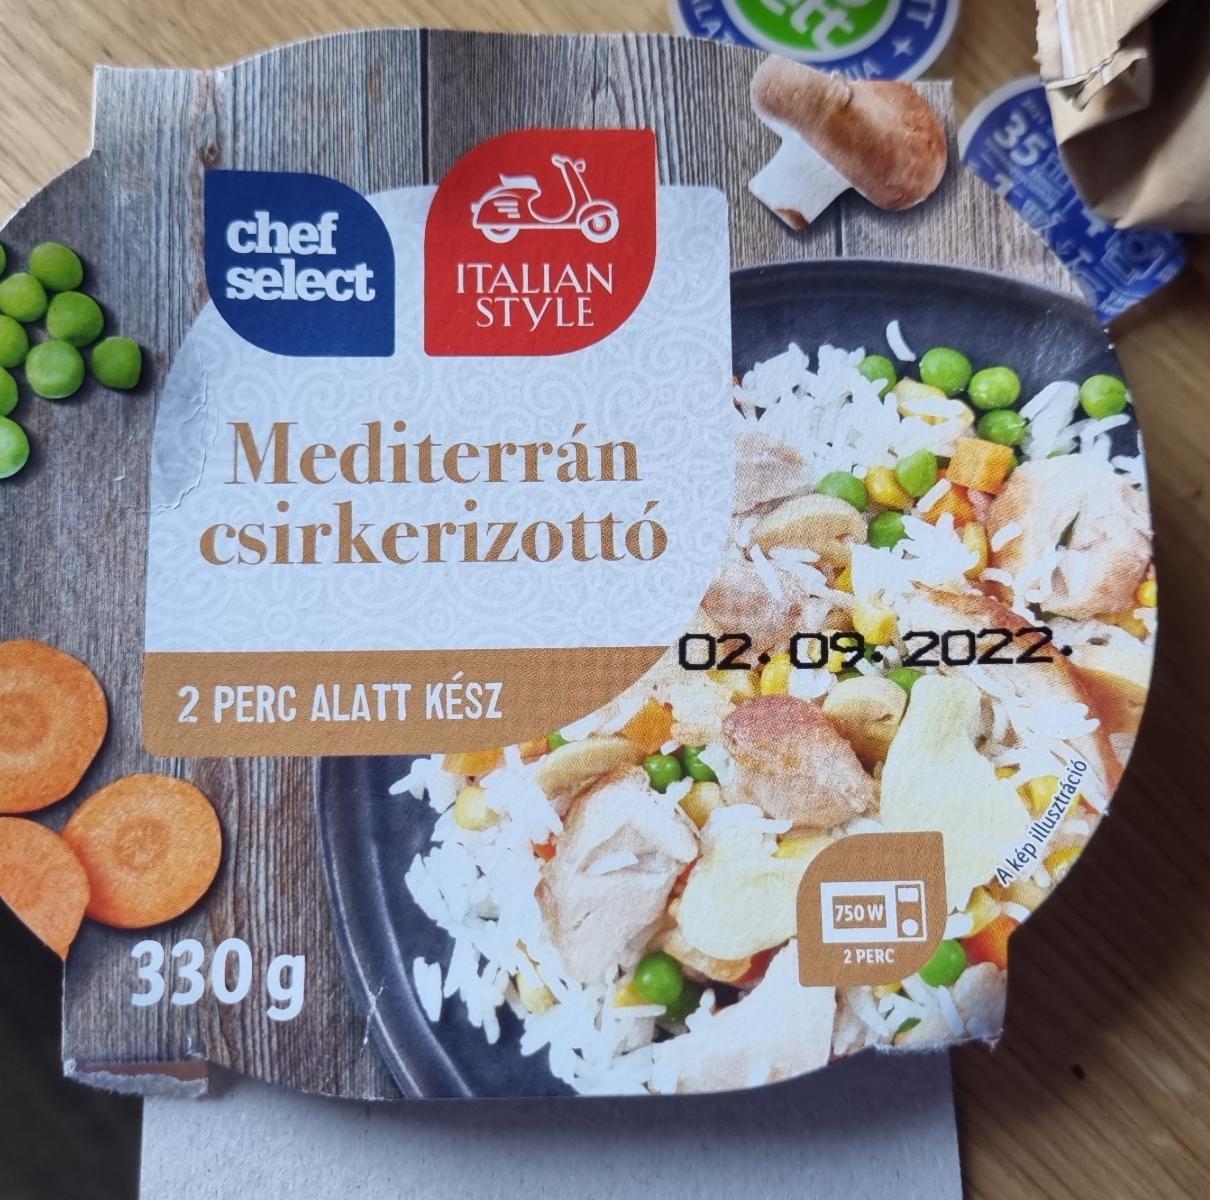 Képek - Mediterrán rizottó csirkével Chef select